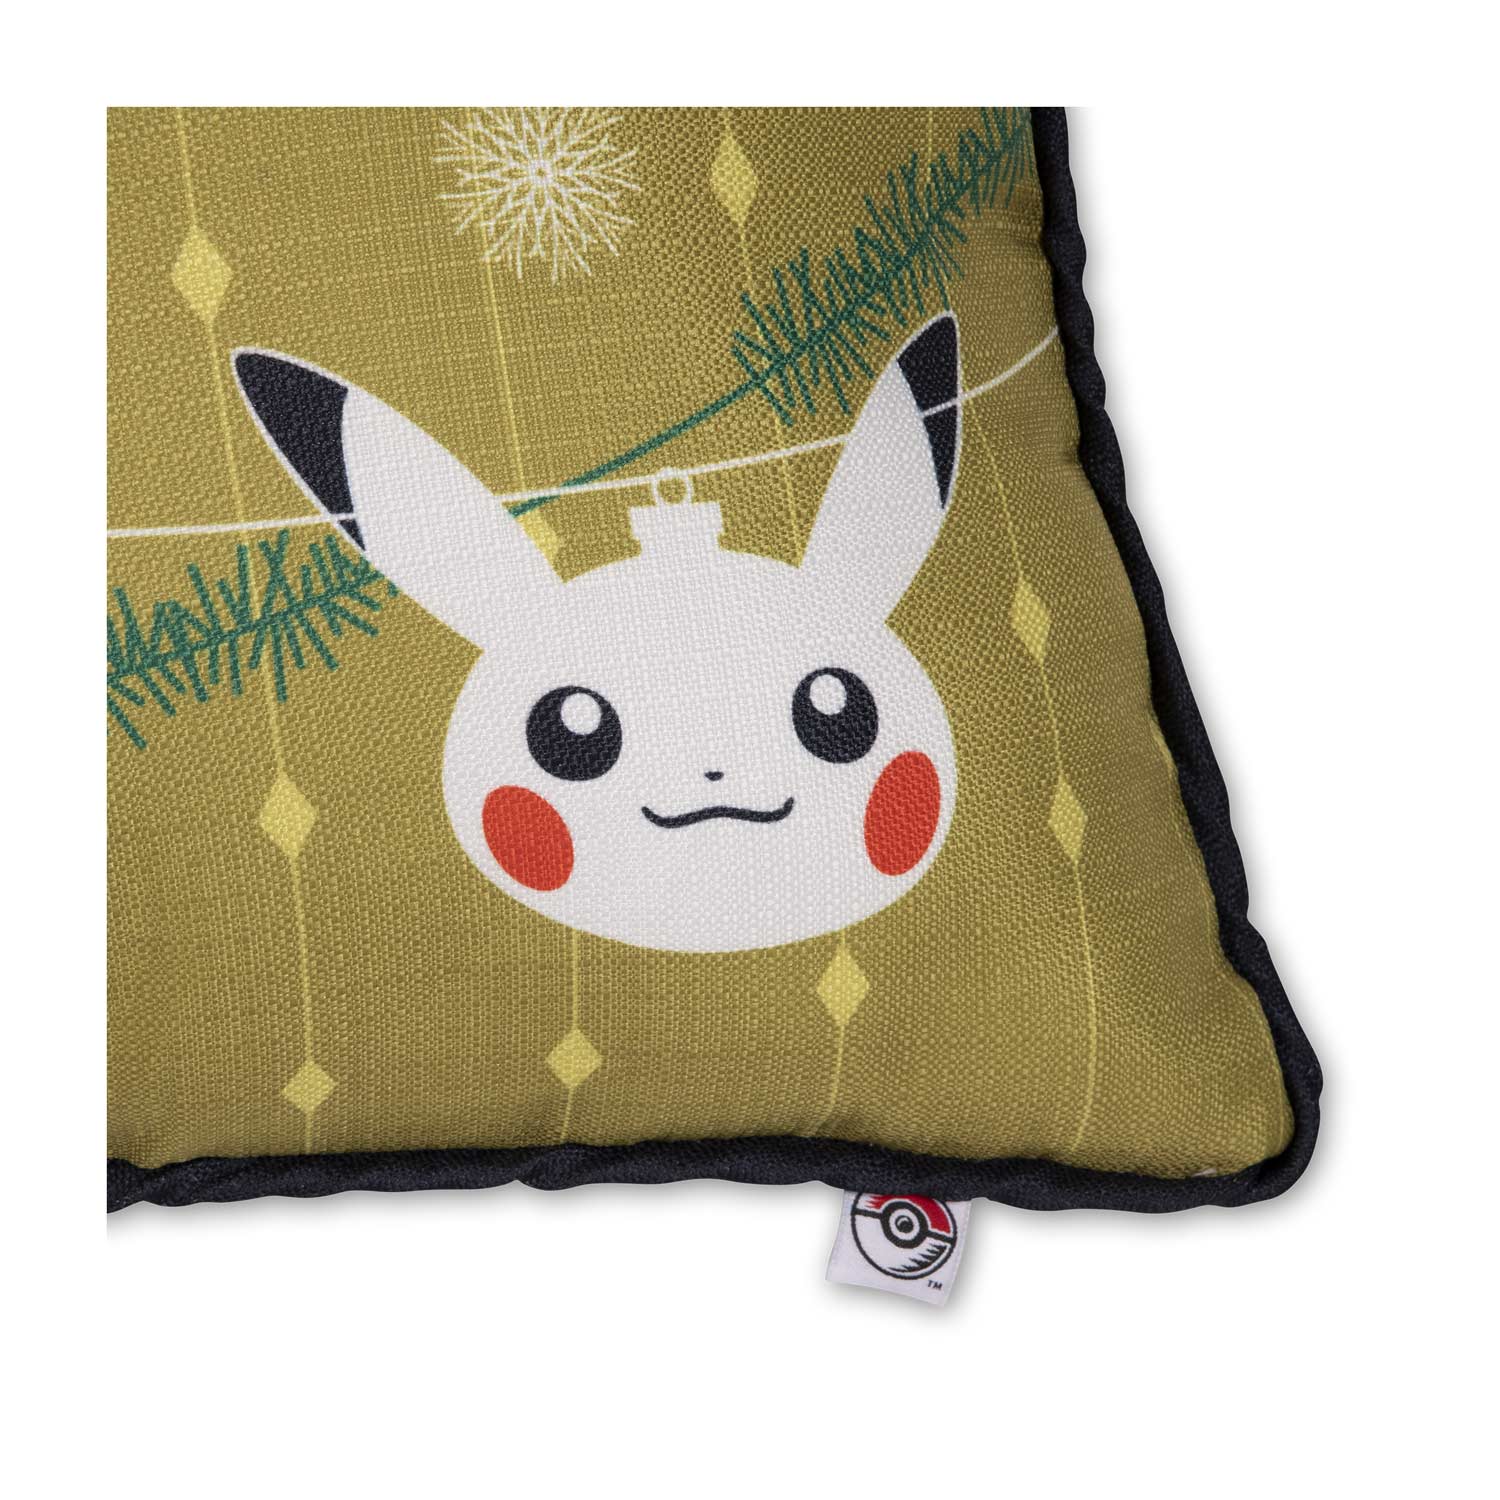 18"x18" Pokemon Pillow Case Throw Cushion Cover Pikachu Yellow 